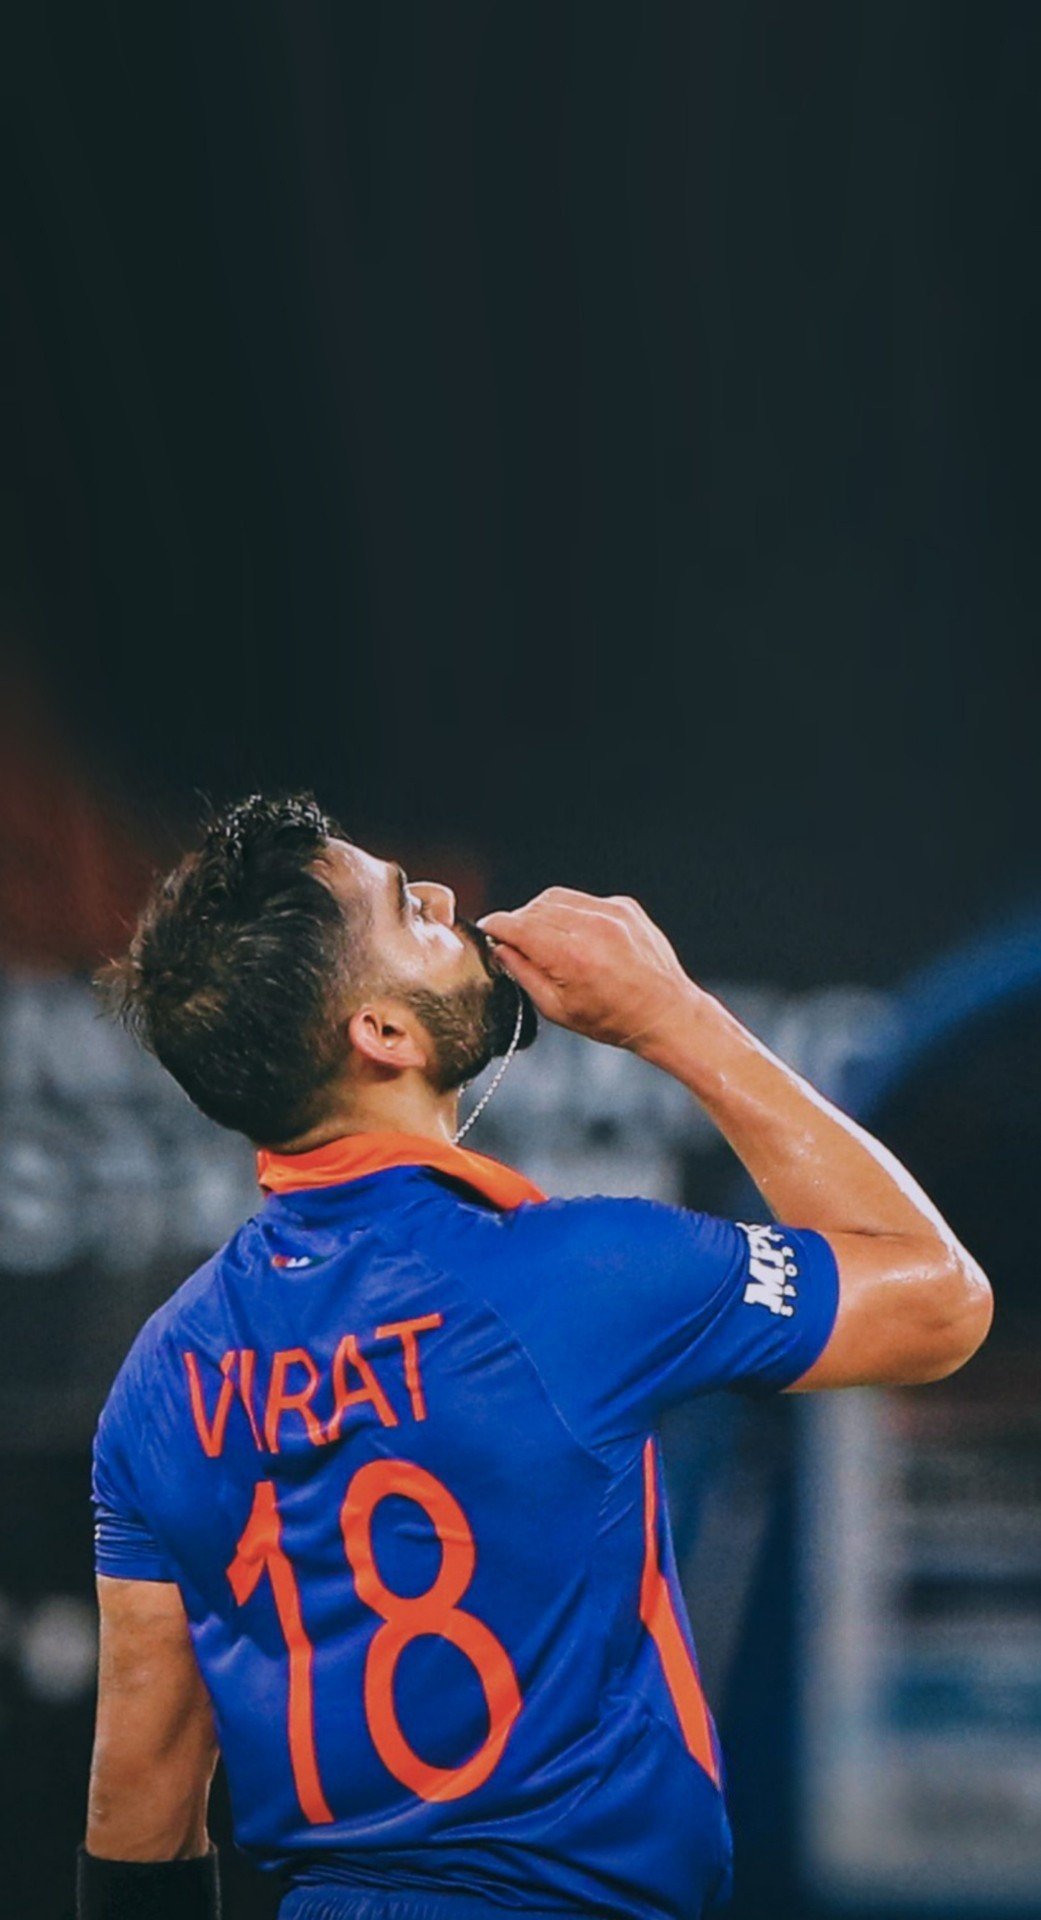 Virat Kohli in International Cricket: विराट कोहली का अंतरराष्ट्रीय क्रिकेट में 15 साल पूरे, 5वें वनडे में जमाया था पहला अर्धशतक